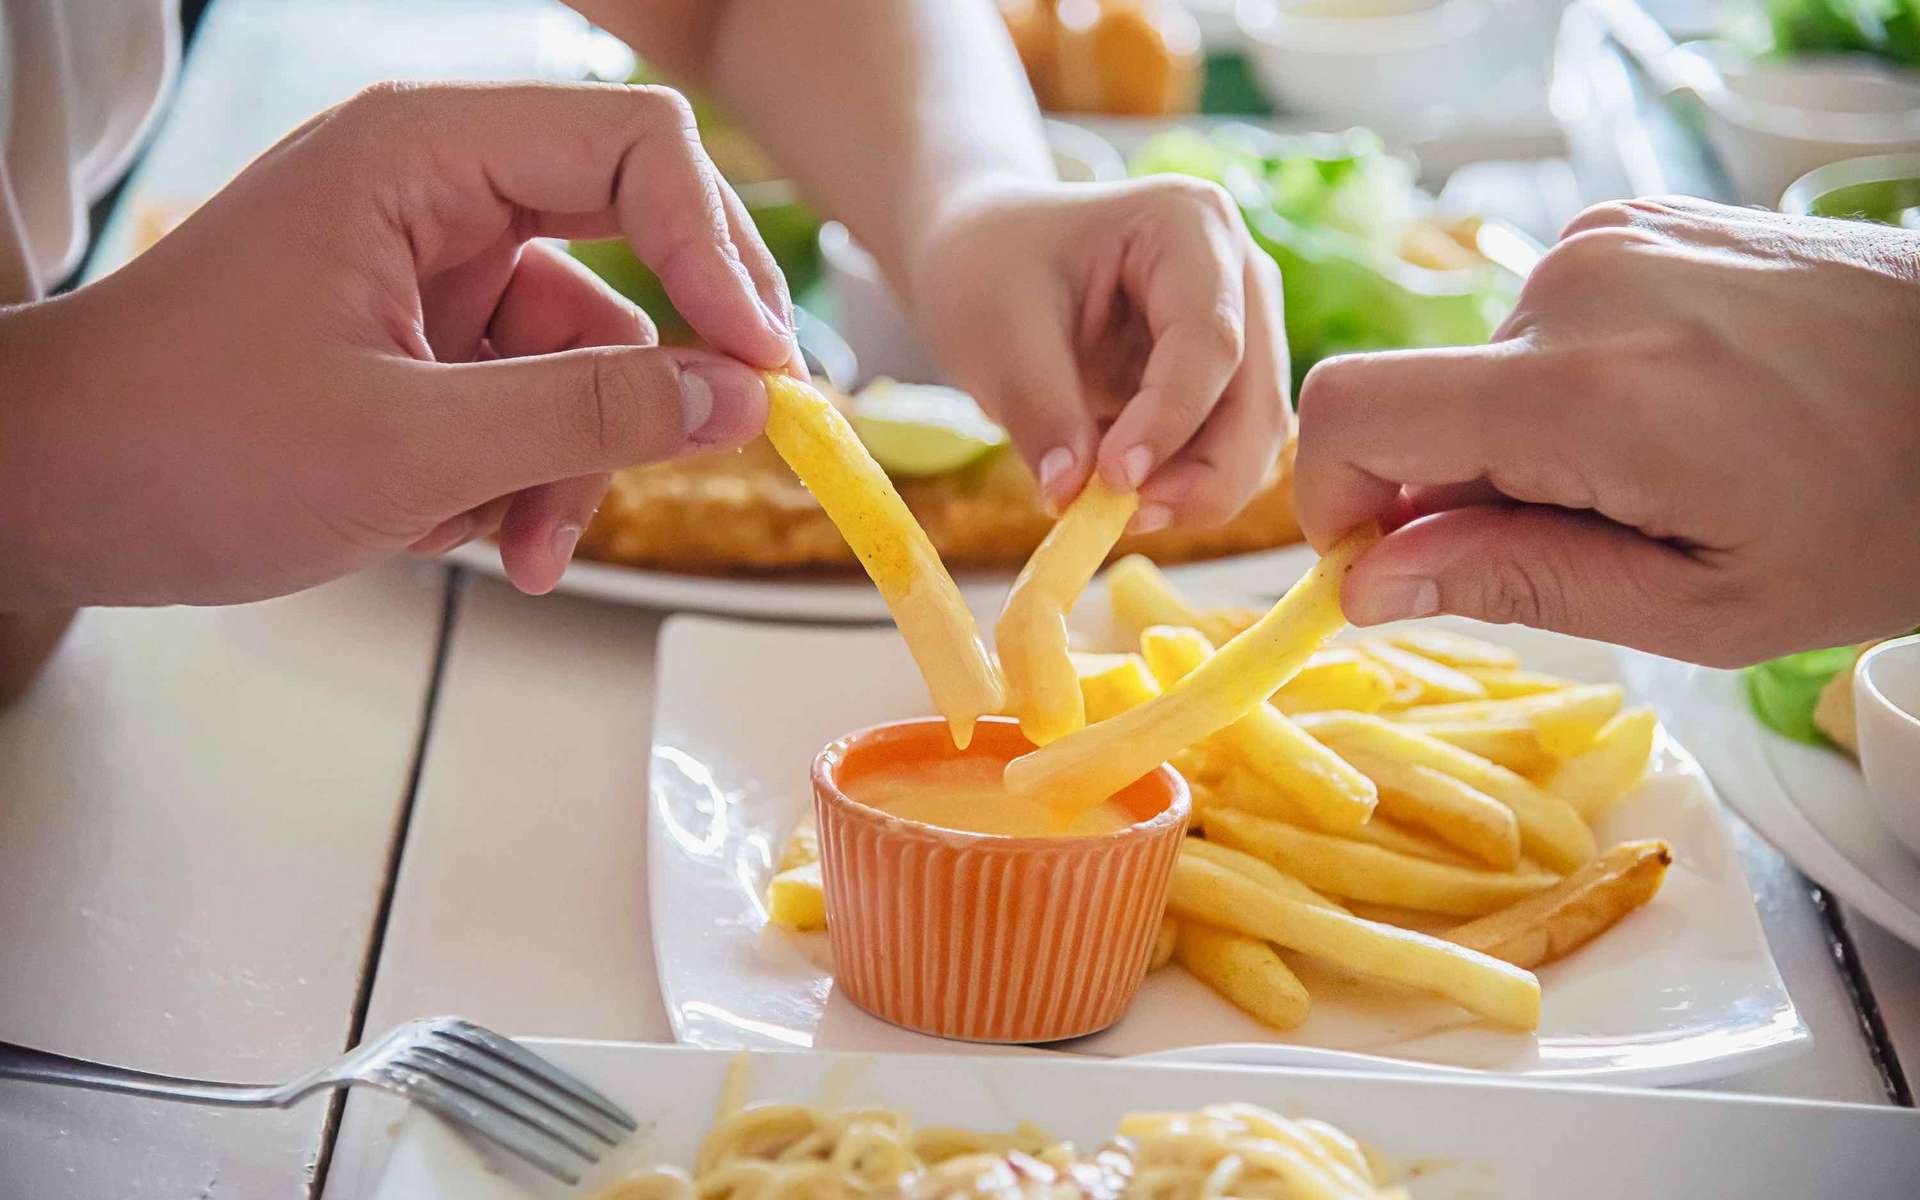 Manger des aliments frits augmenterait le risque de dépression